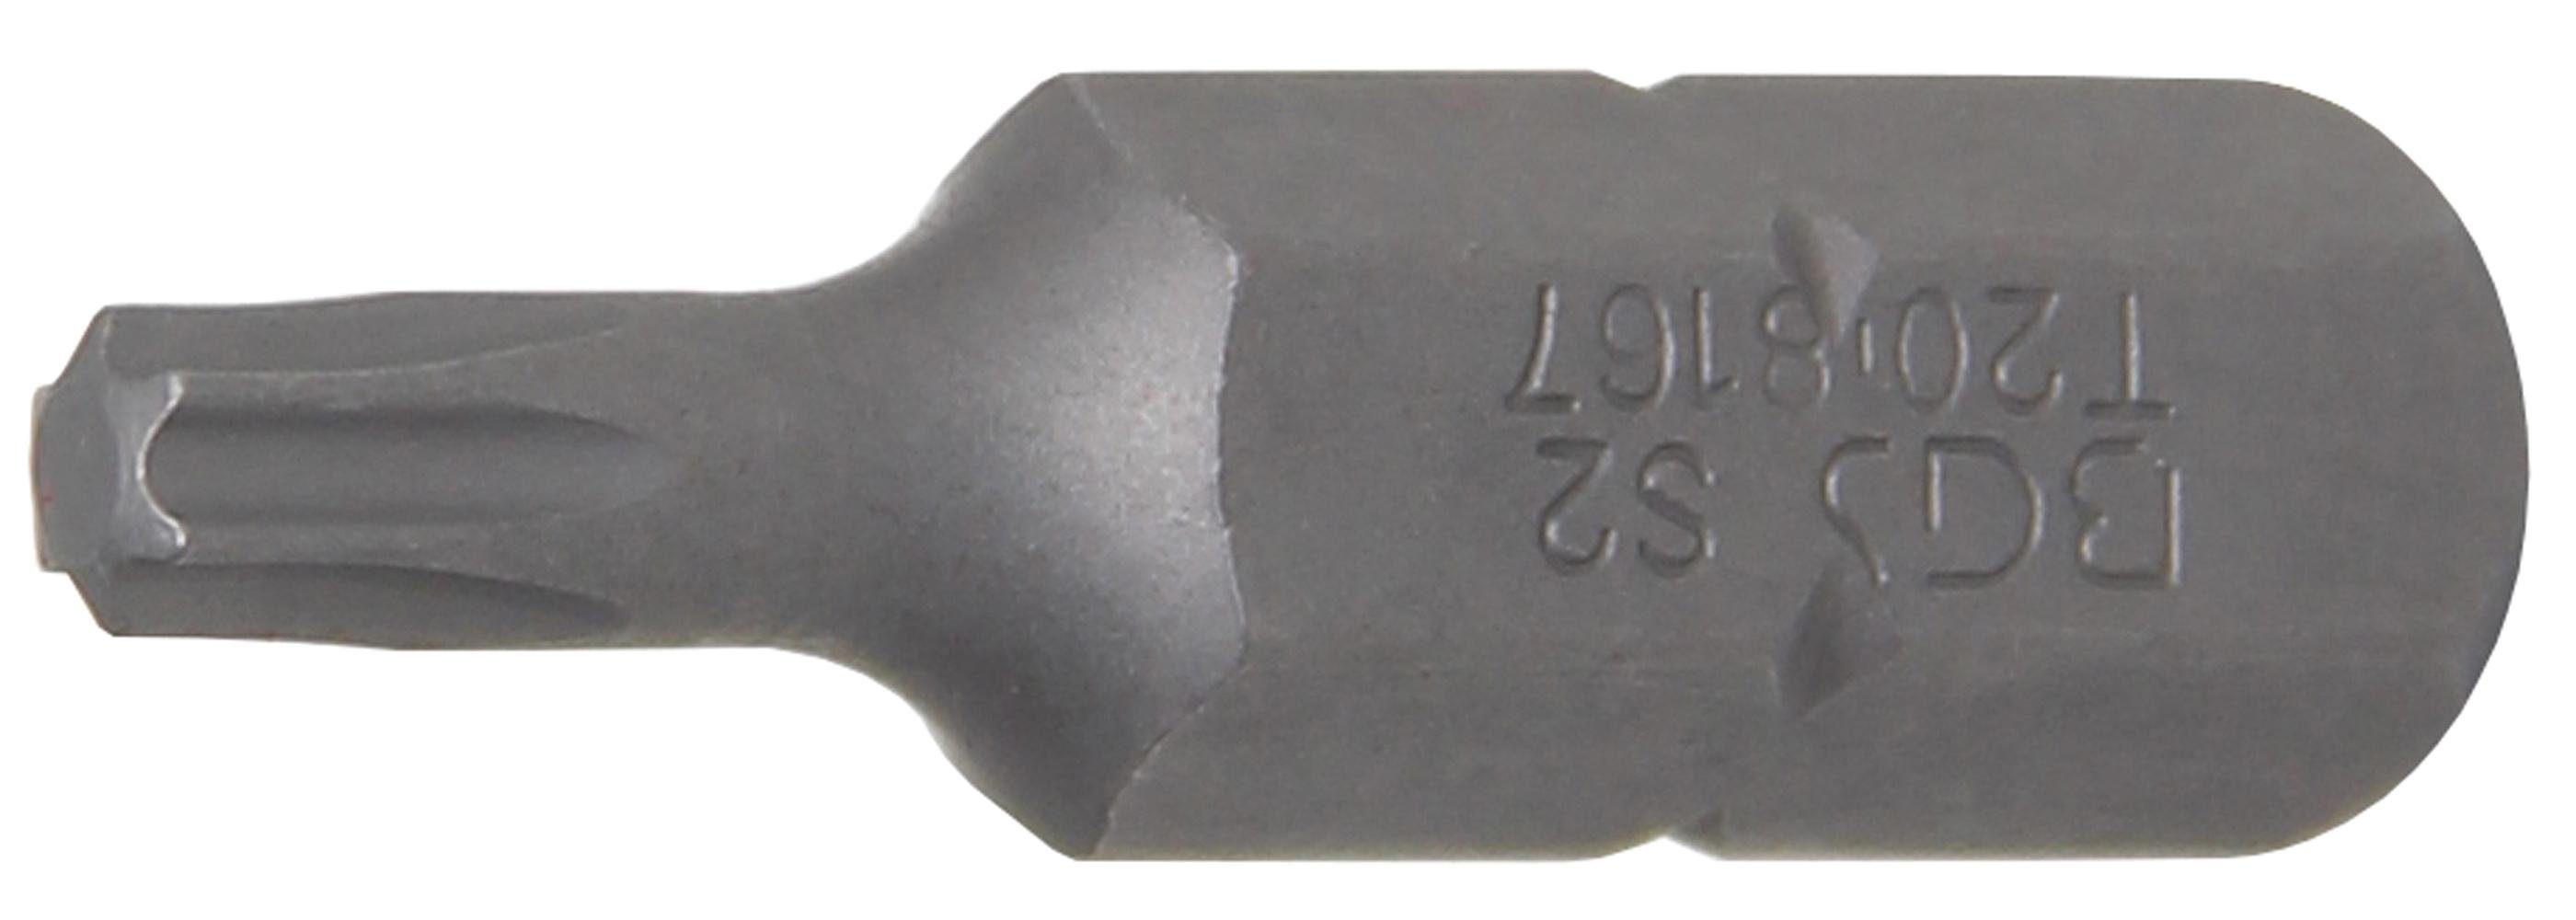 BGS technic Bit-Schraubendreher Bit, Antrieb T20 8 mm (5/16), Torx) T-Profil (für Außensechskant